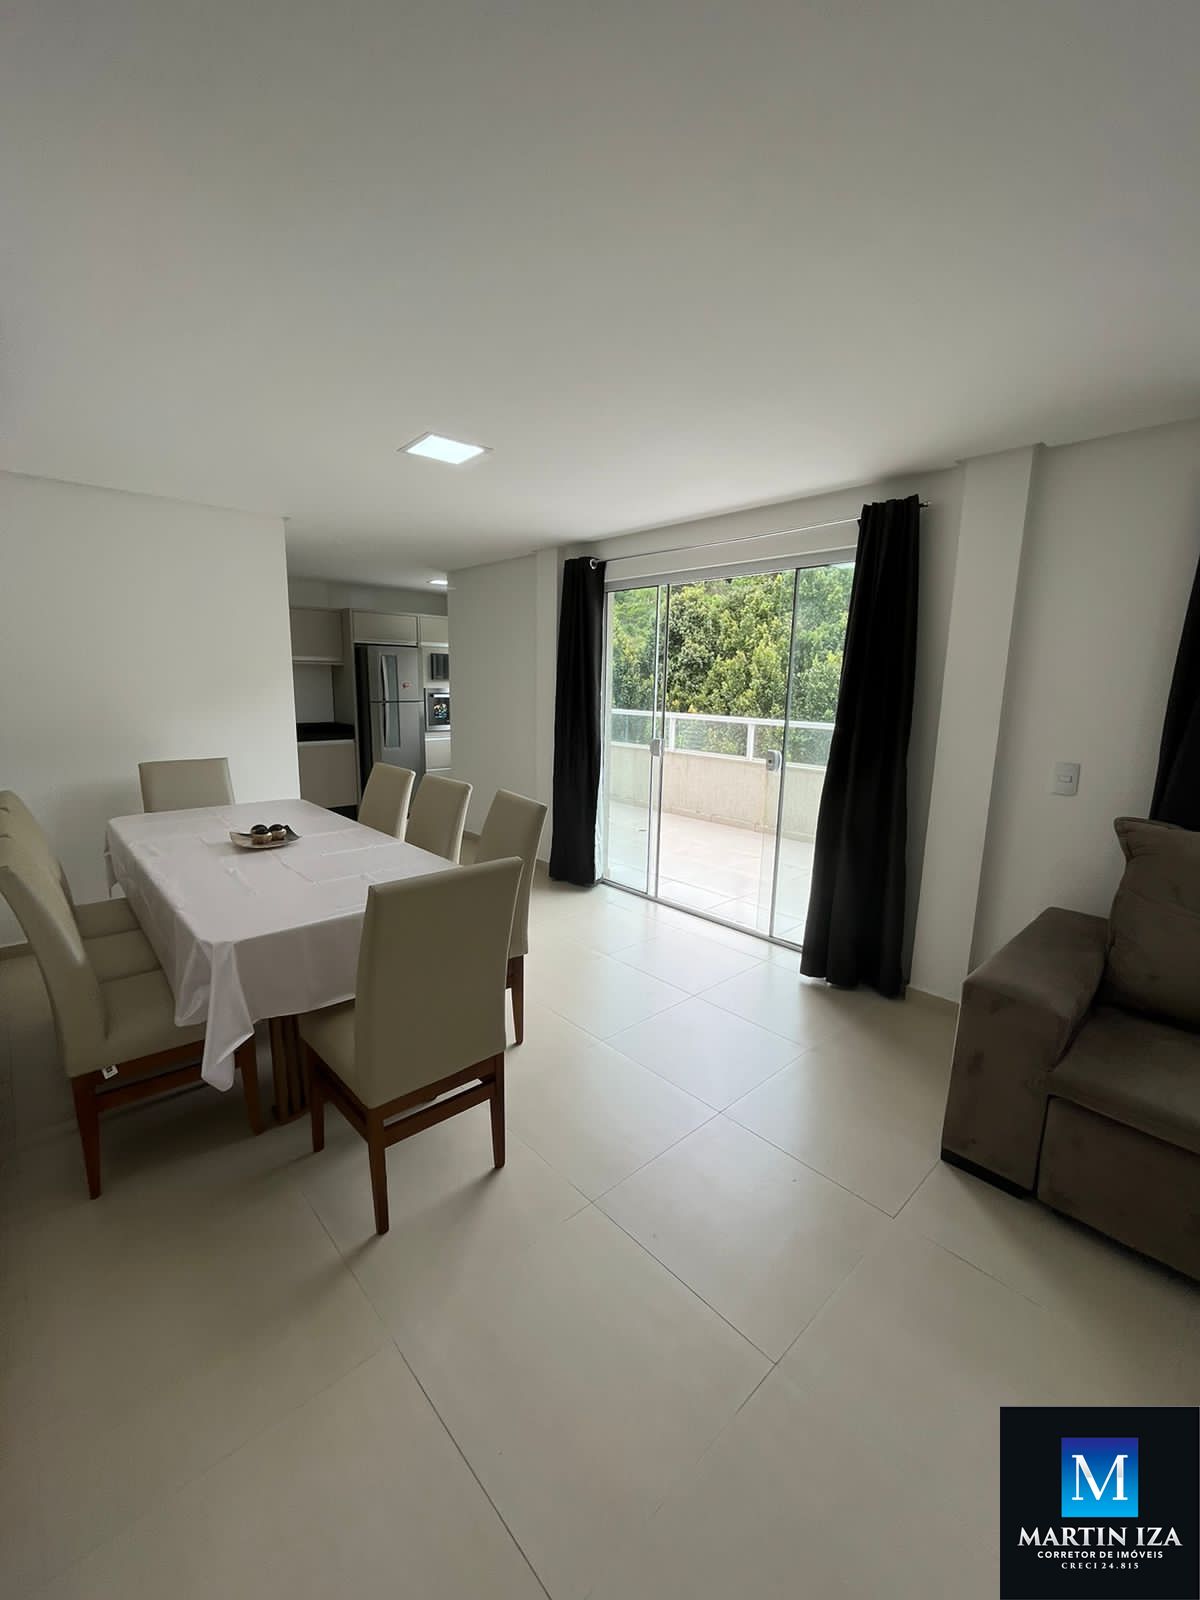 Cobertura com 3 Dormitórios para alugar, 170 m² por R$ 800,00